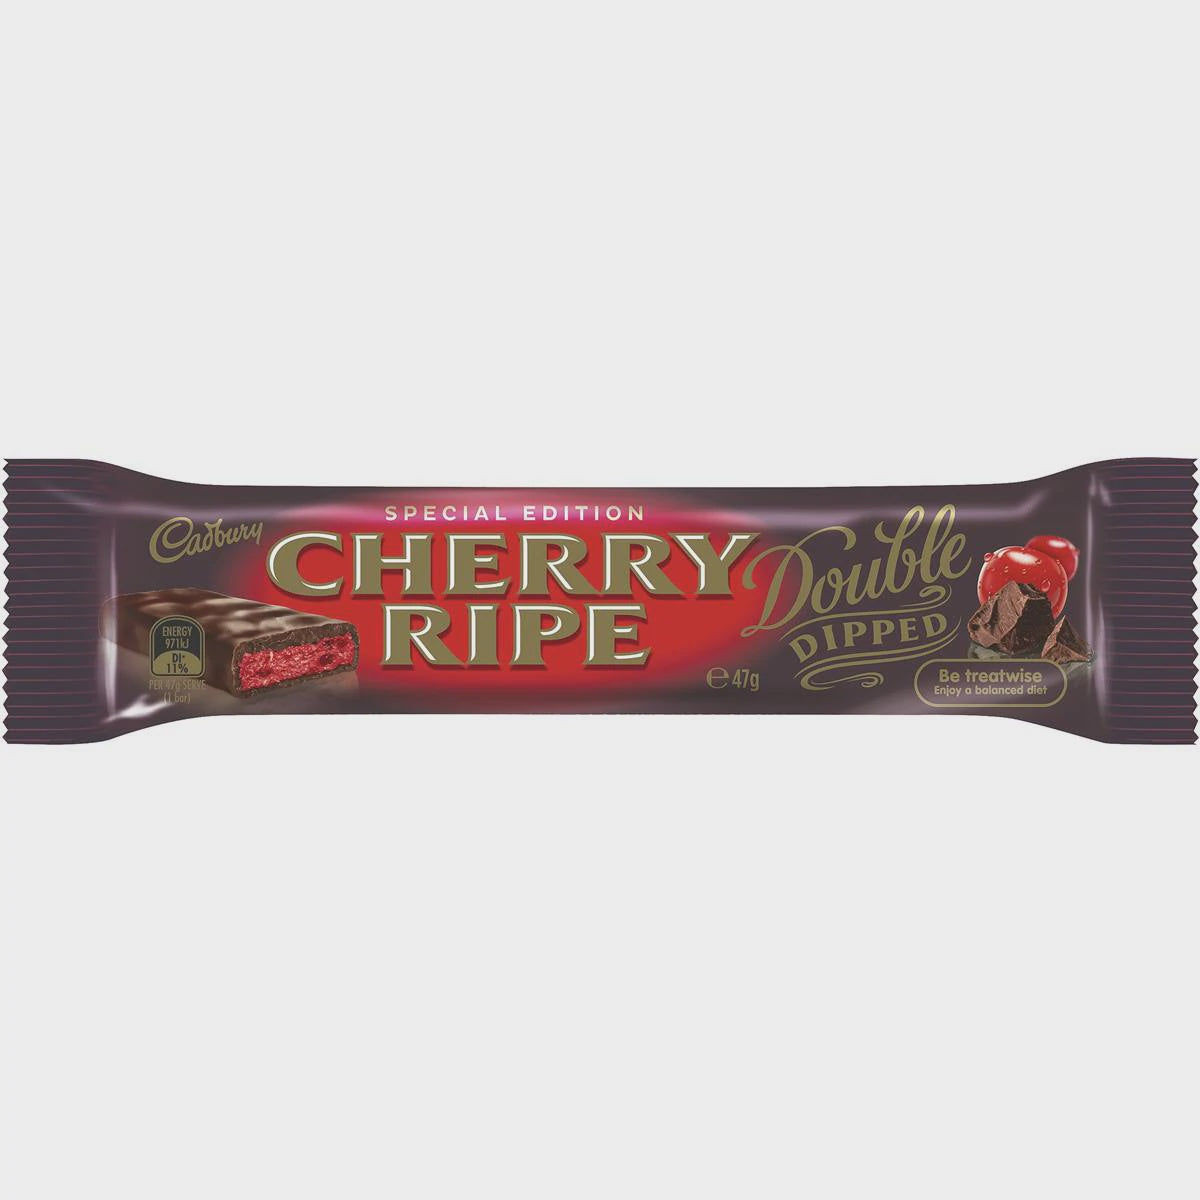 Cadbury Cherry Ripe Minis